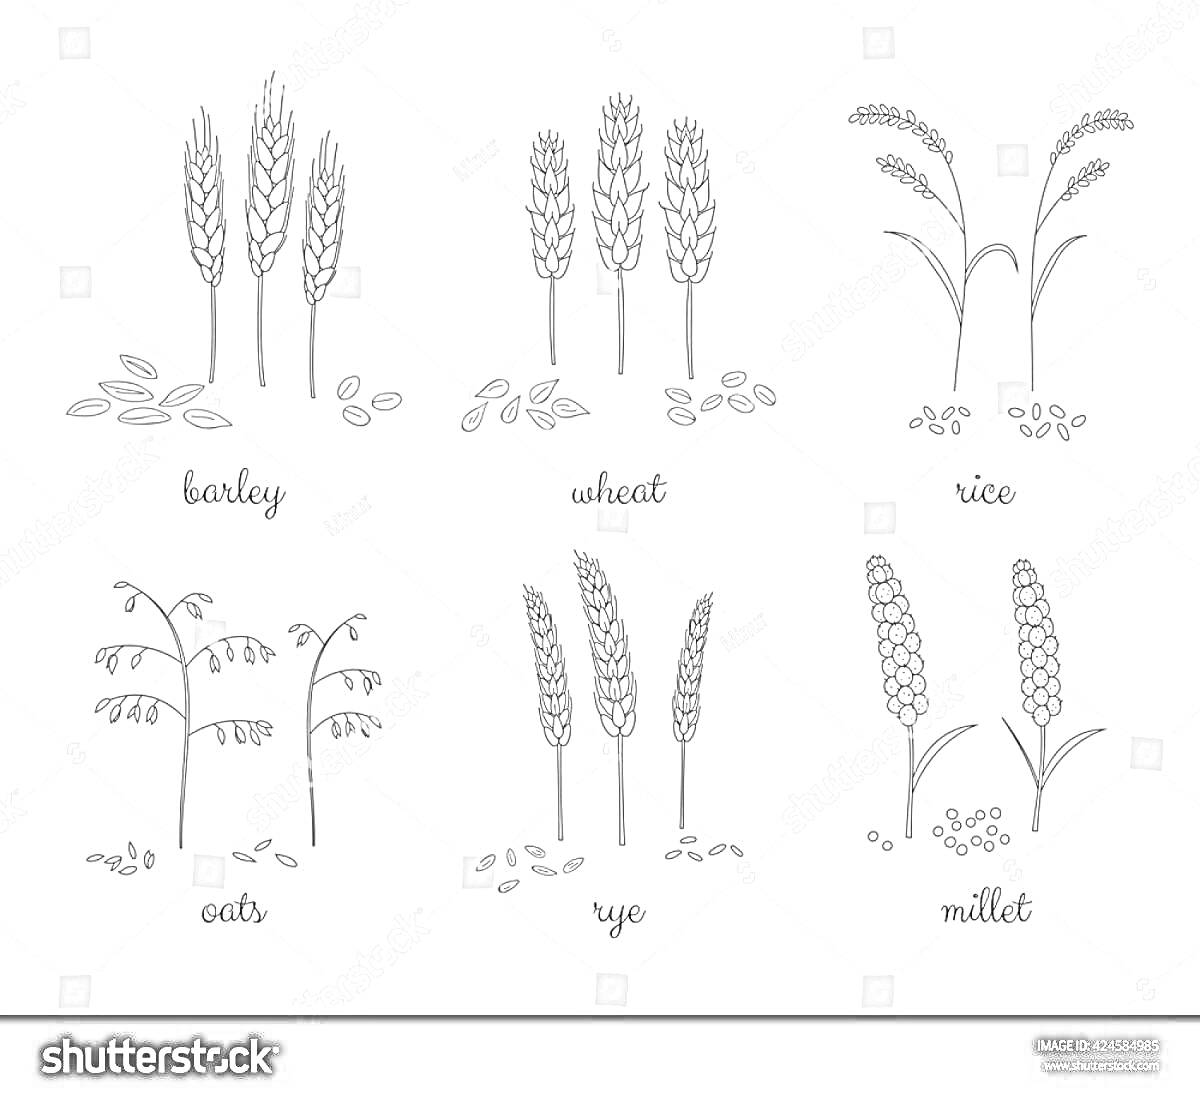 Раскраска Иллюстрация различных злаковых культур: ячмень, пшеница, рис, овес, рожь и просо, с изображением их колосьев и зерен